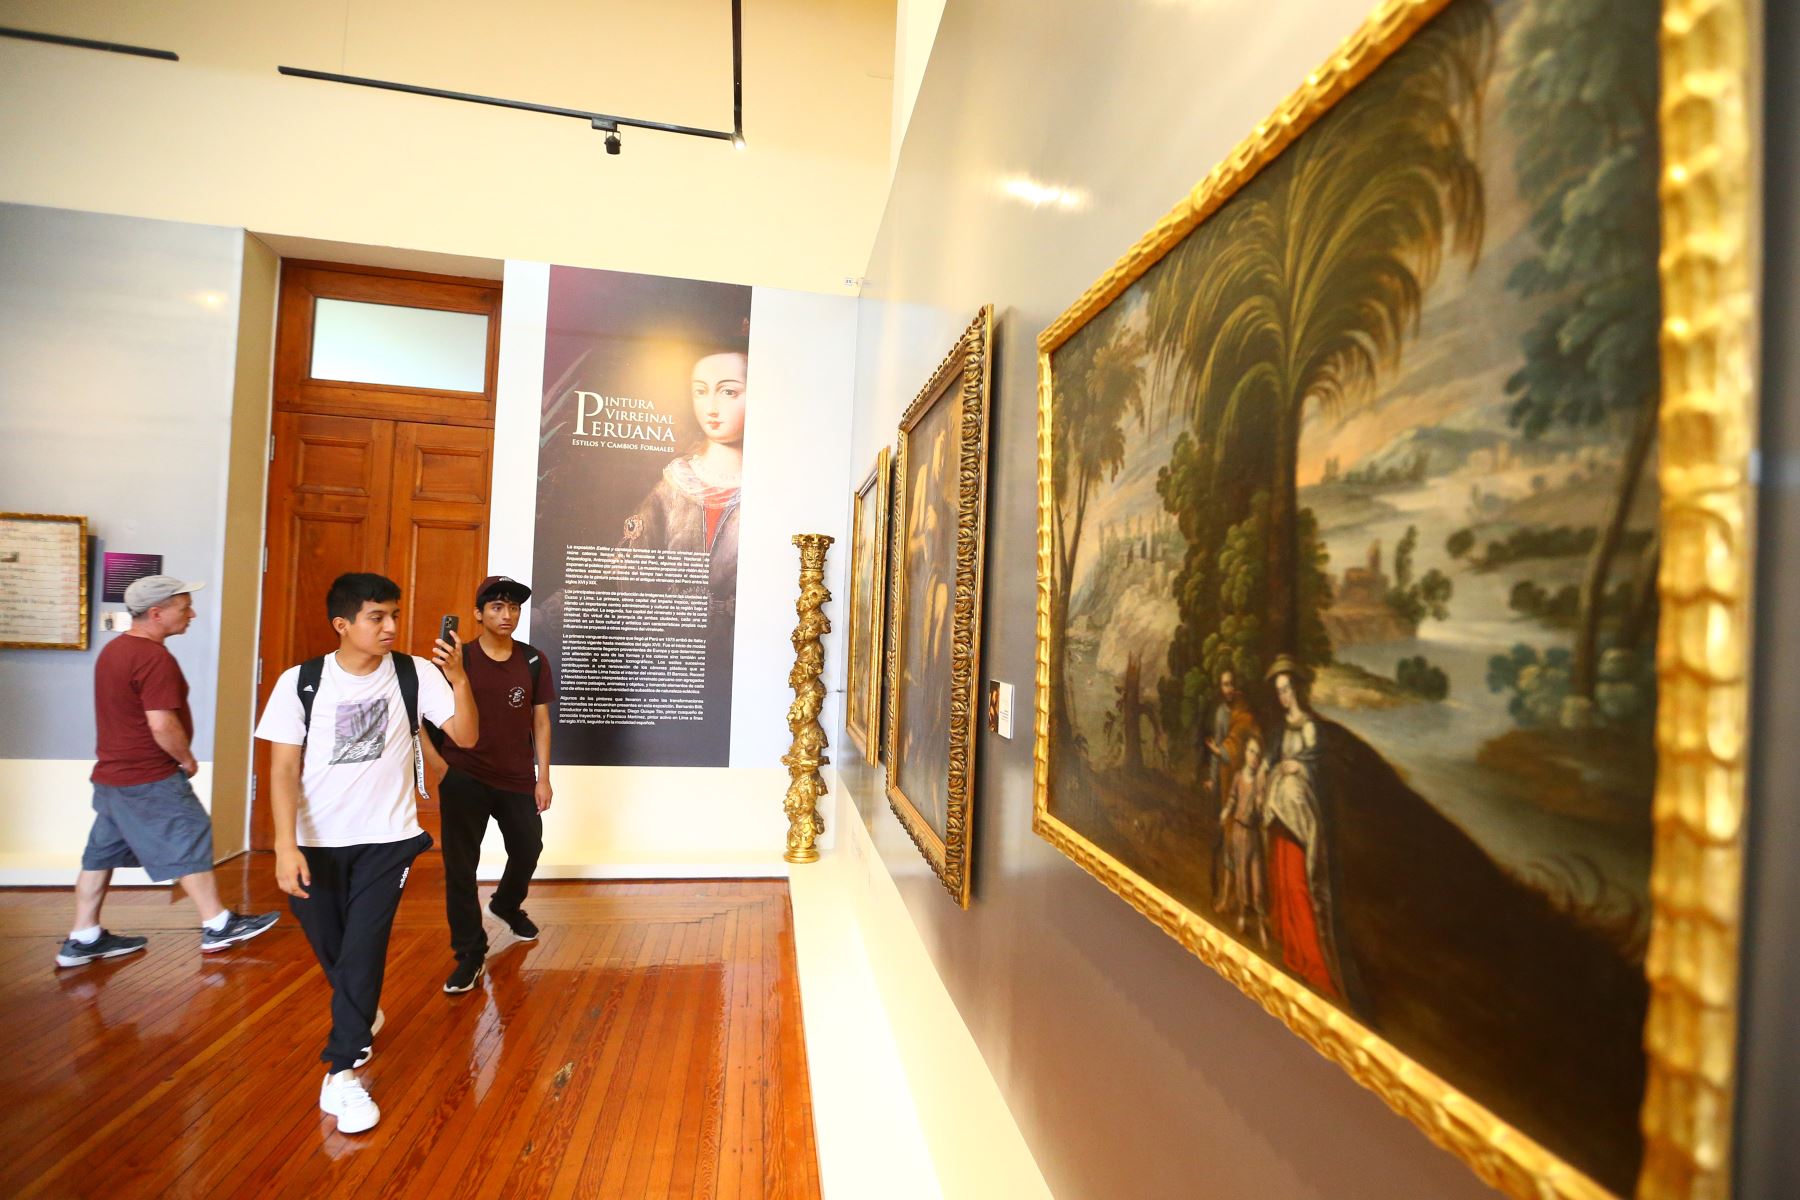 El programa Museos Abiertos brinda acceso gratuito a los museos, sitios arqueológicos y lugares históricos administrados por el Estado. Foto: ANDINA/ Eddy Ramos